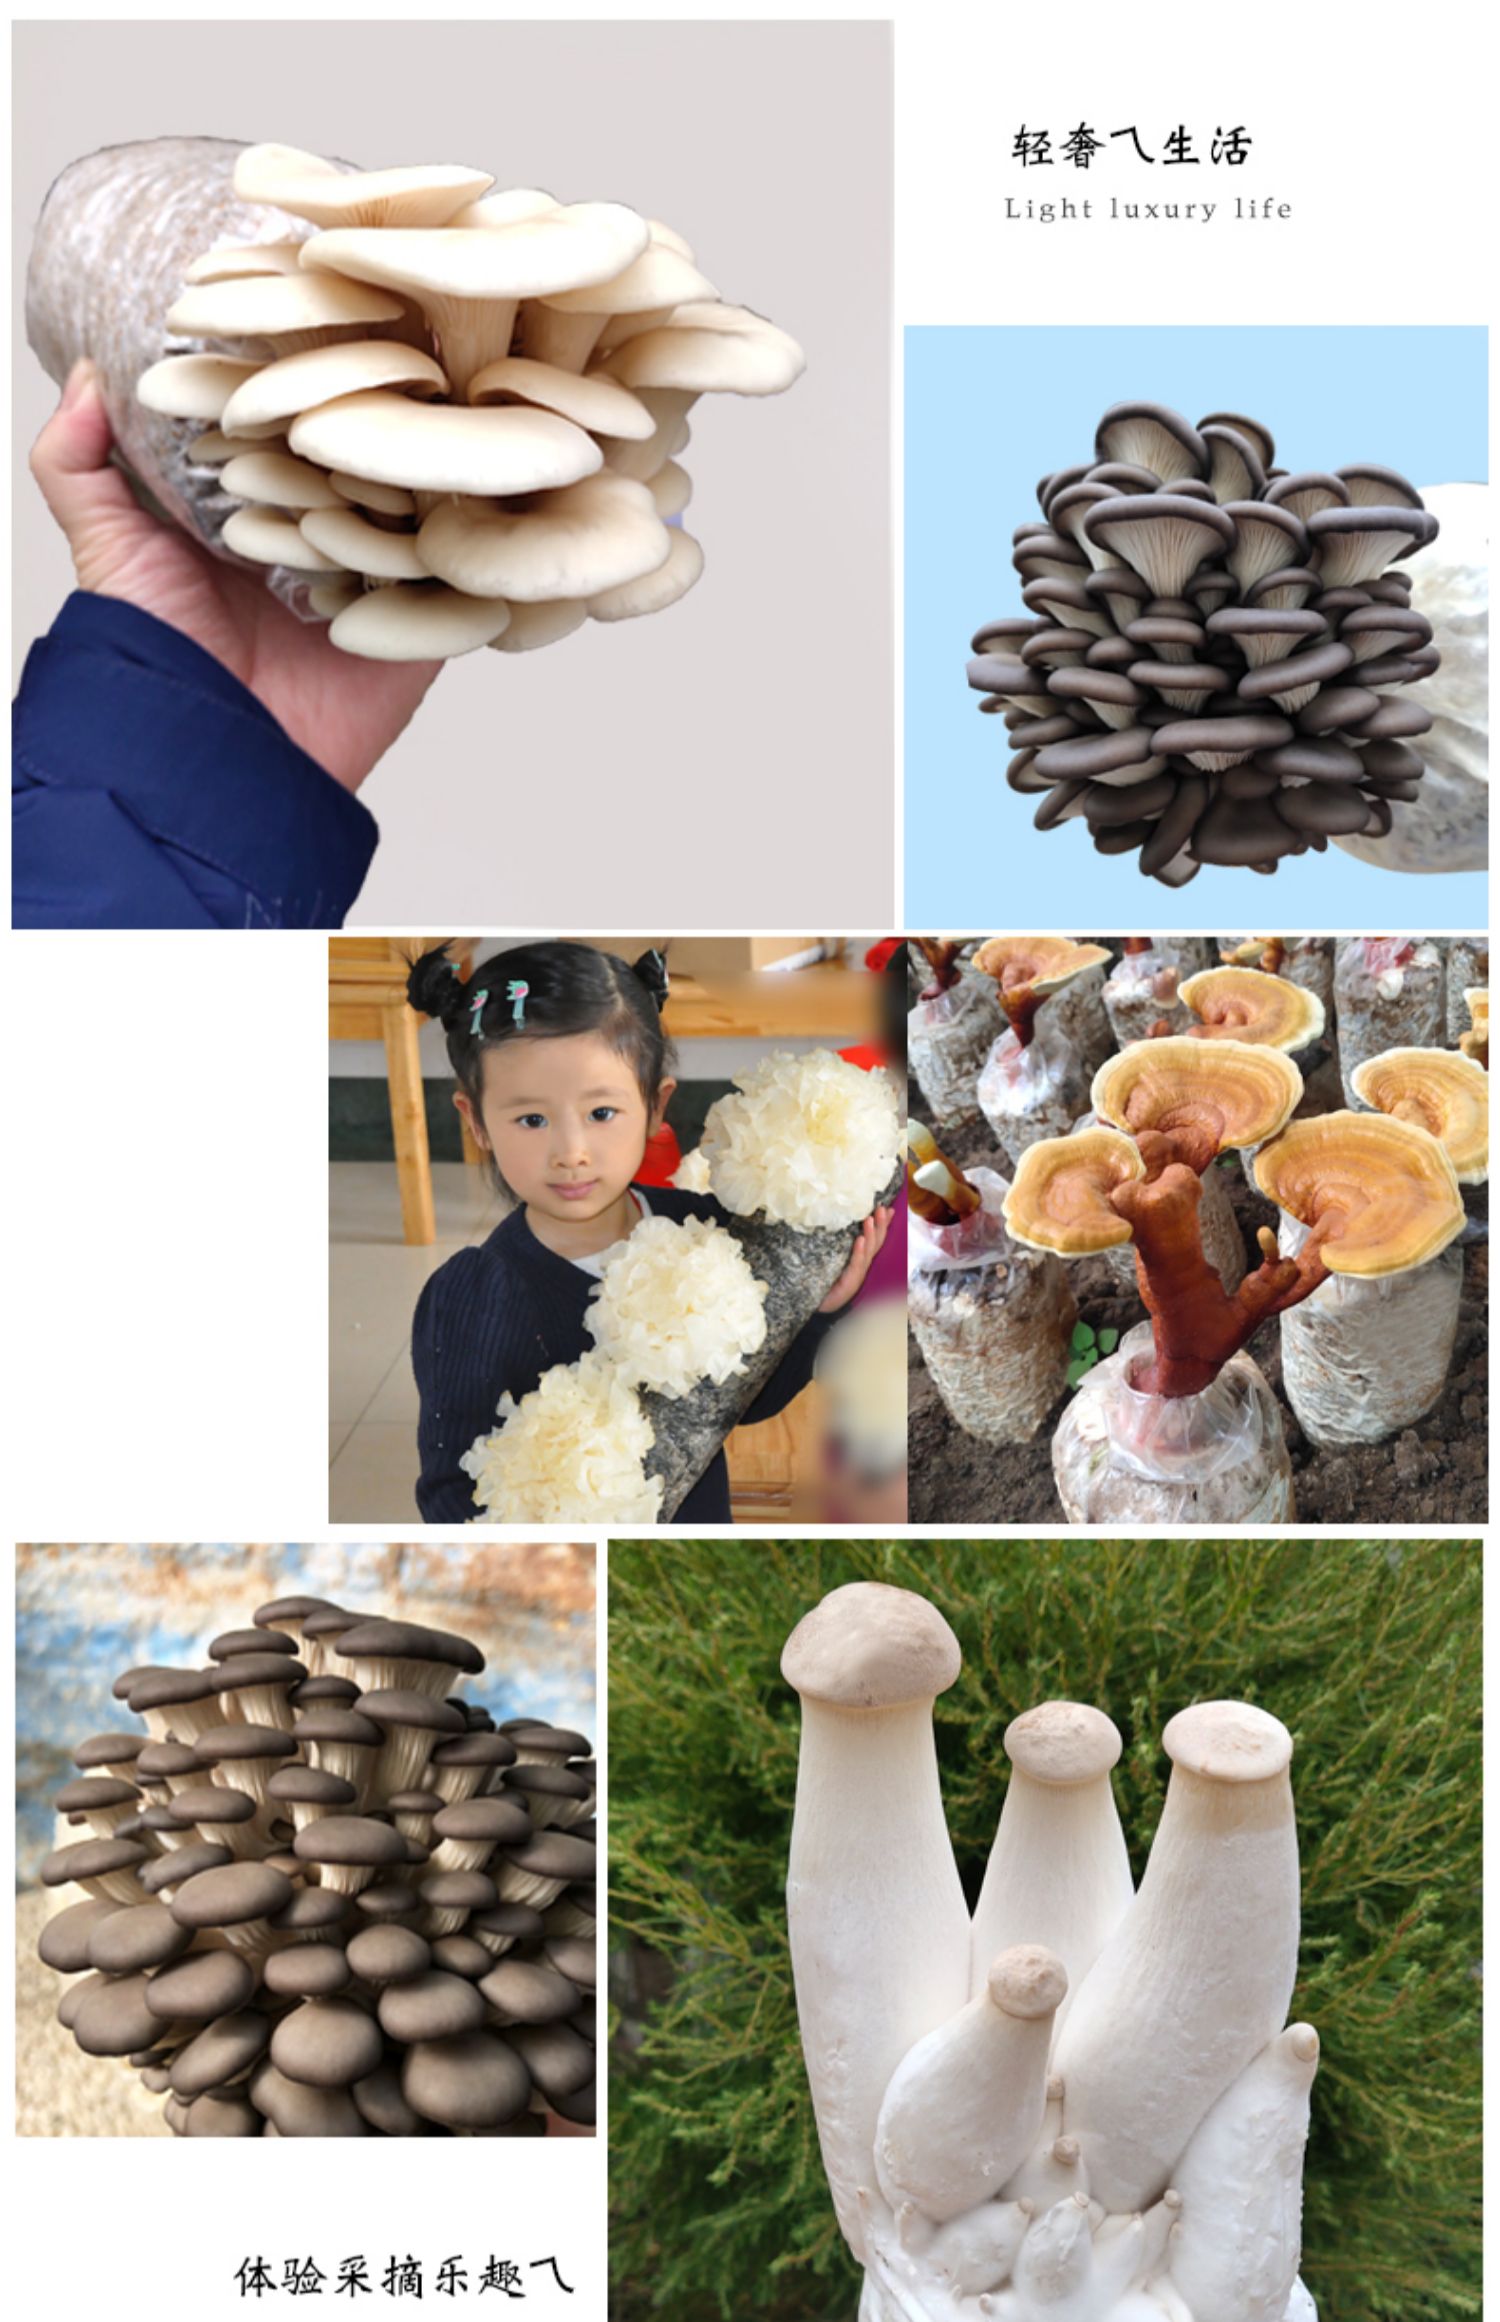 蘑菇菌包制作图片